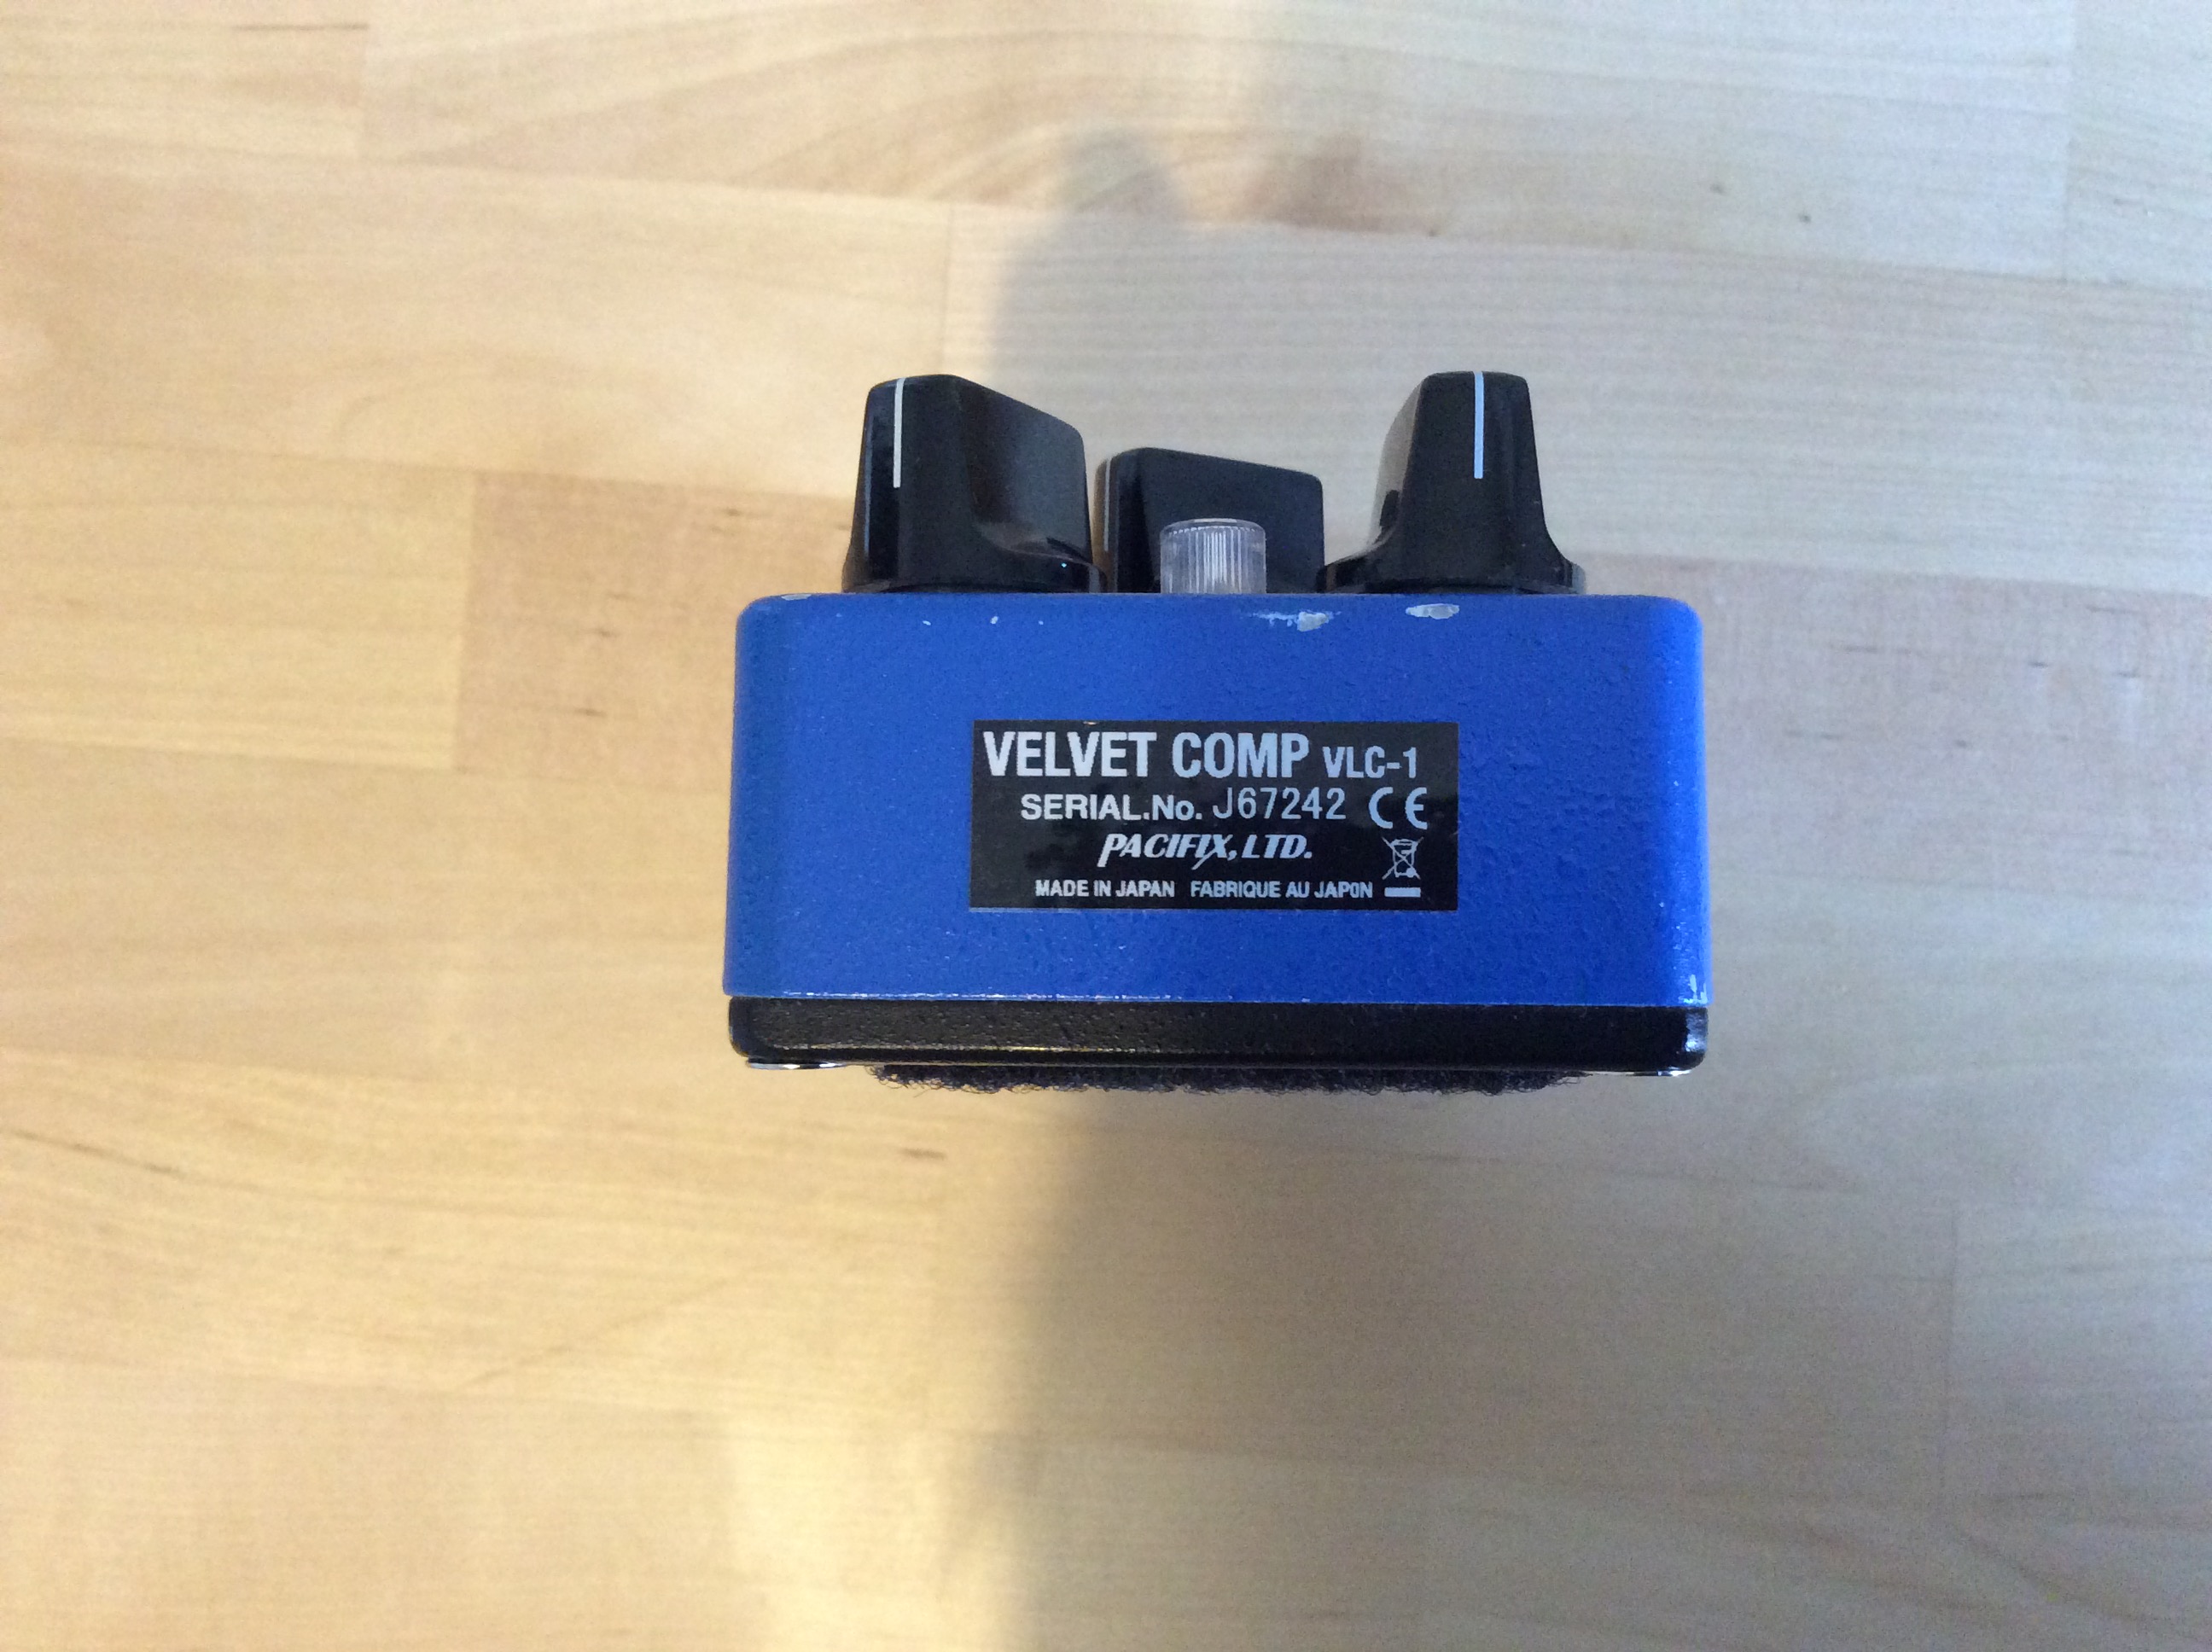 Velvet Comp VLC-1 - Providence Velvet Comp VLC-1 - Audiofanzine